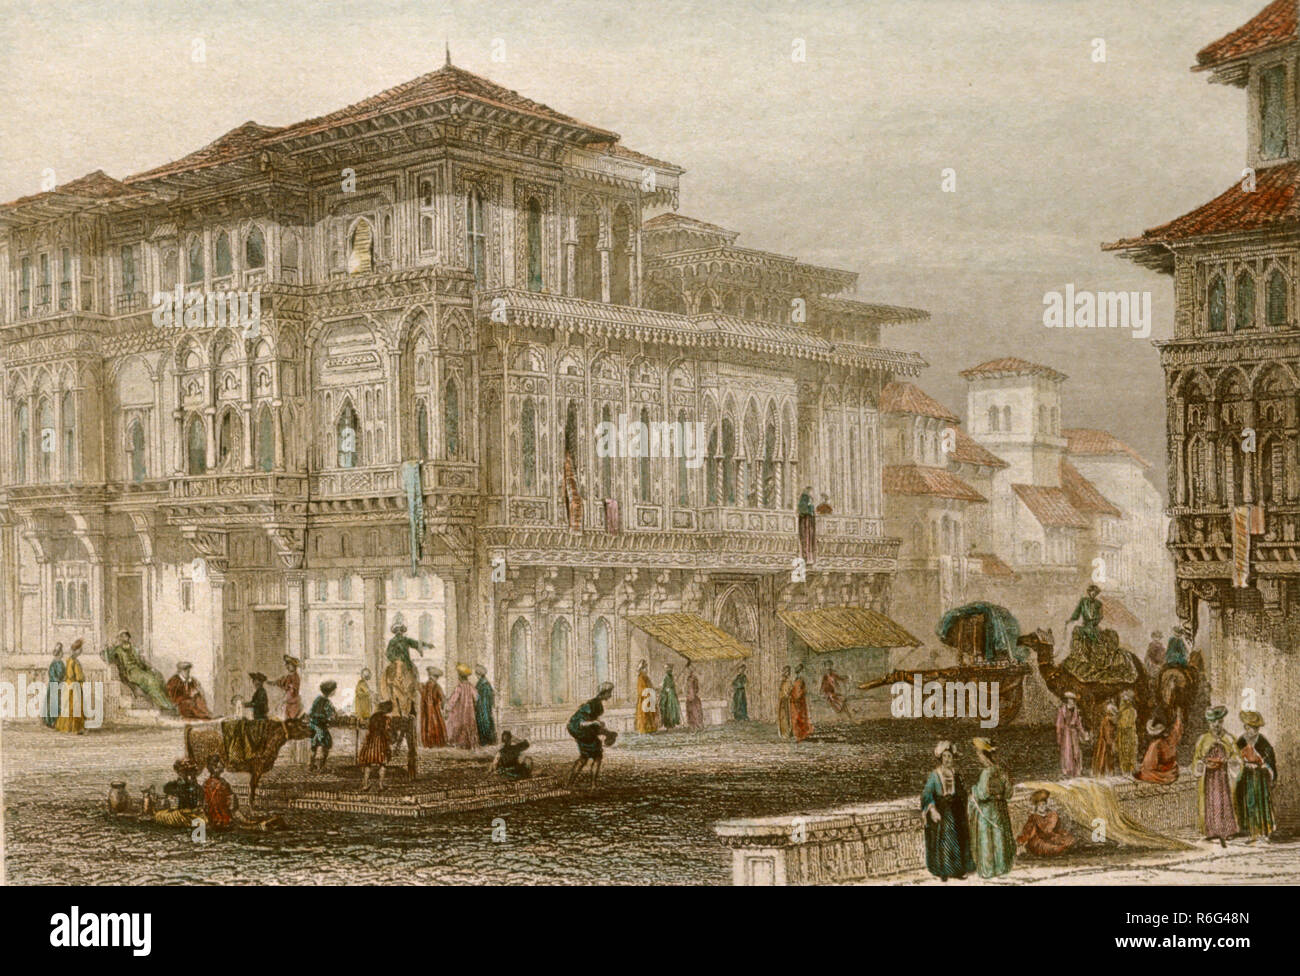 Pintura coloreada a mano de la ciudad vieja, India, Asia, antigua litografía vintage de 1800 Foto de stock